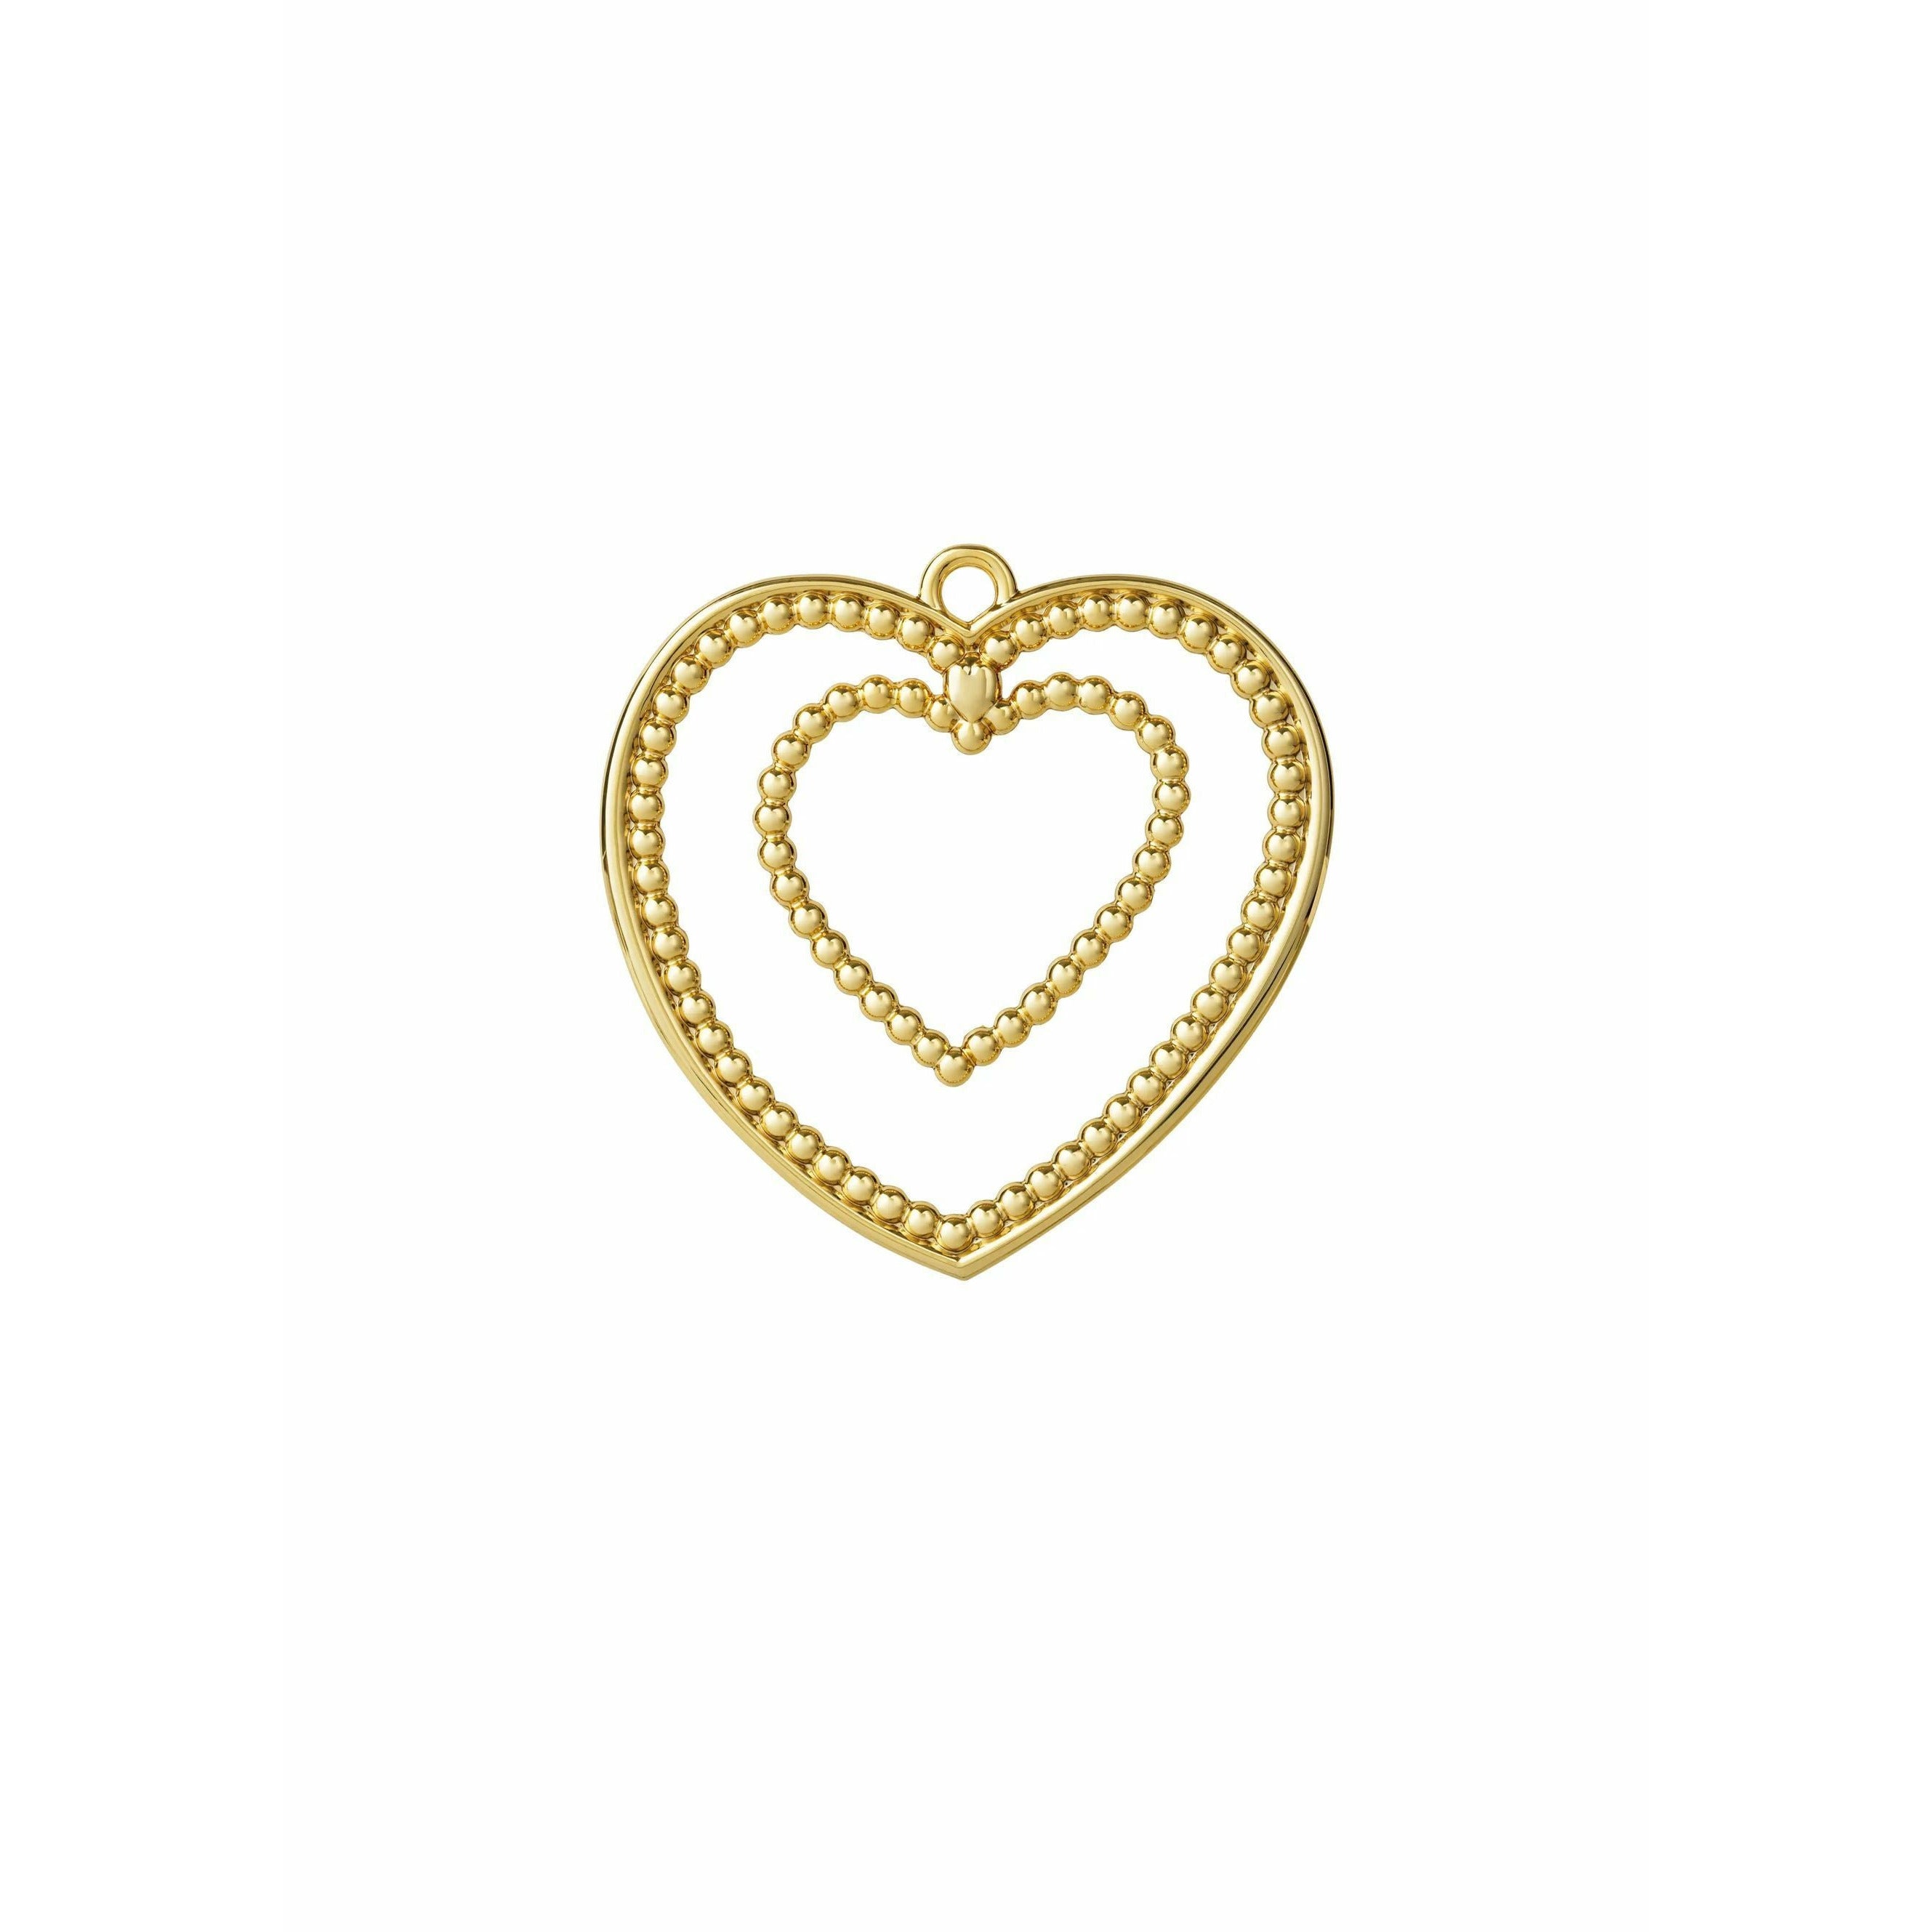 Rosendahl Karen Blixen Ball Heart H 7cm, Gold Plated